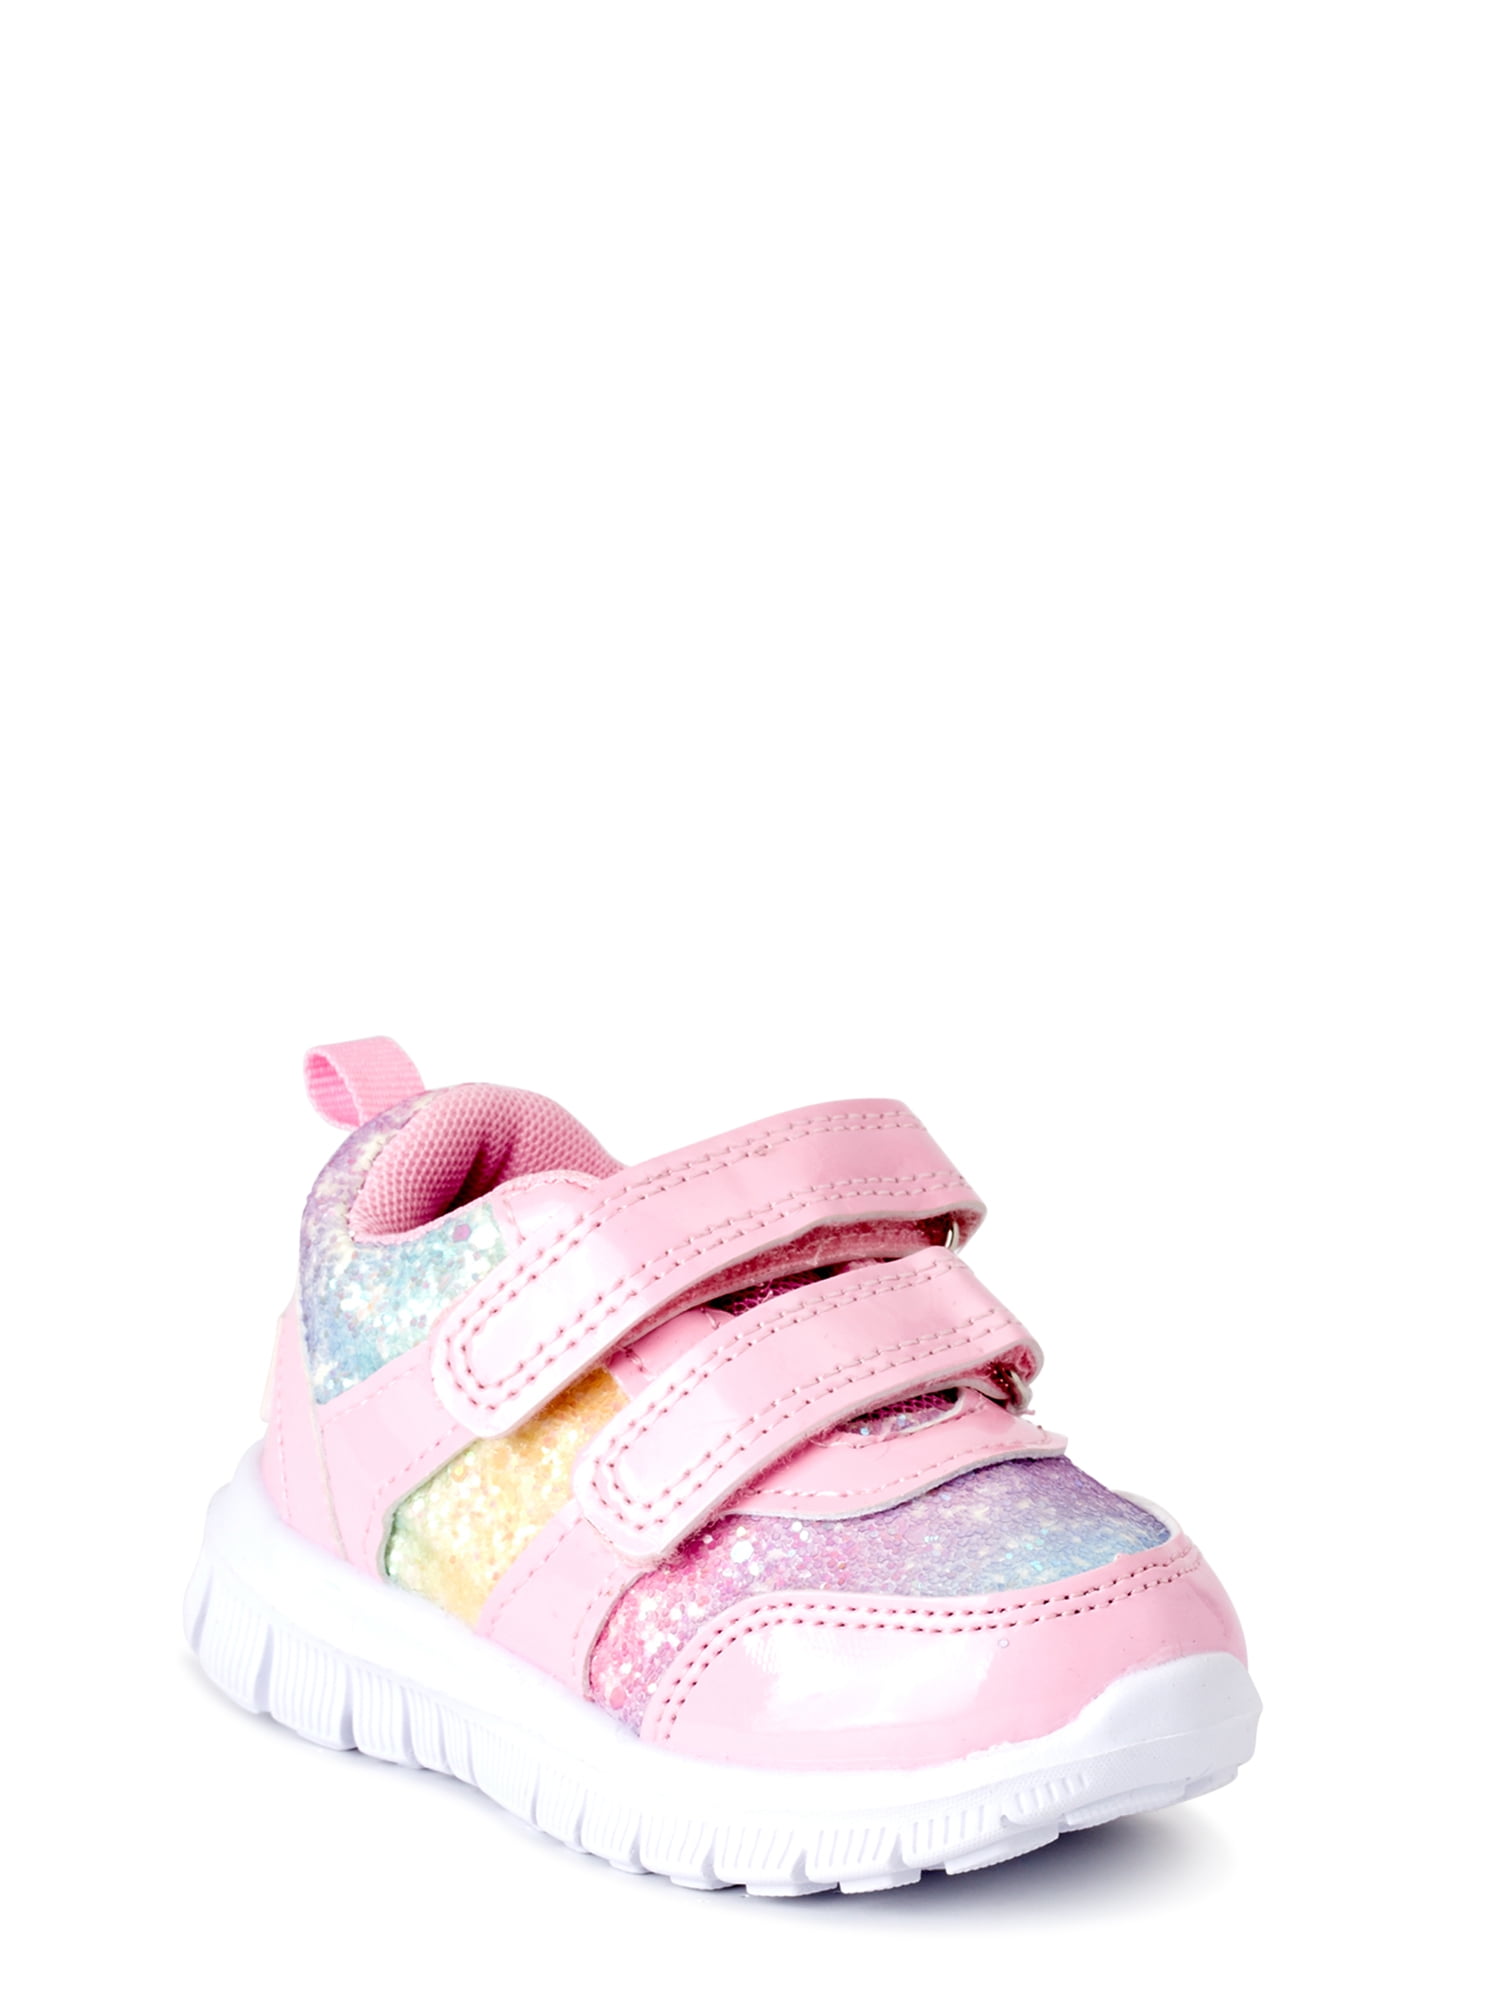 infant tennis shoes size 3